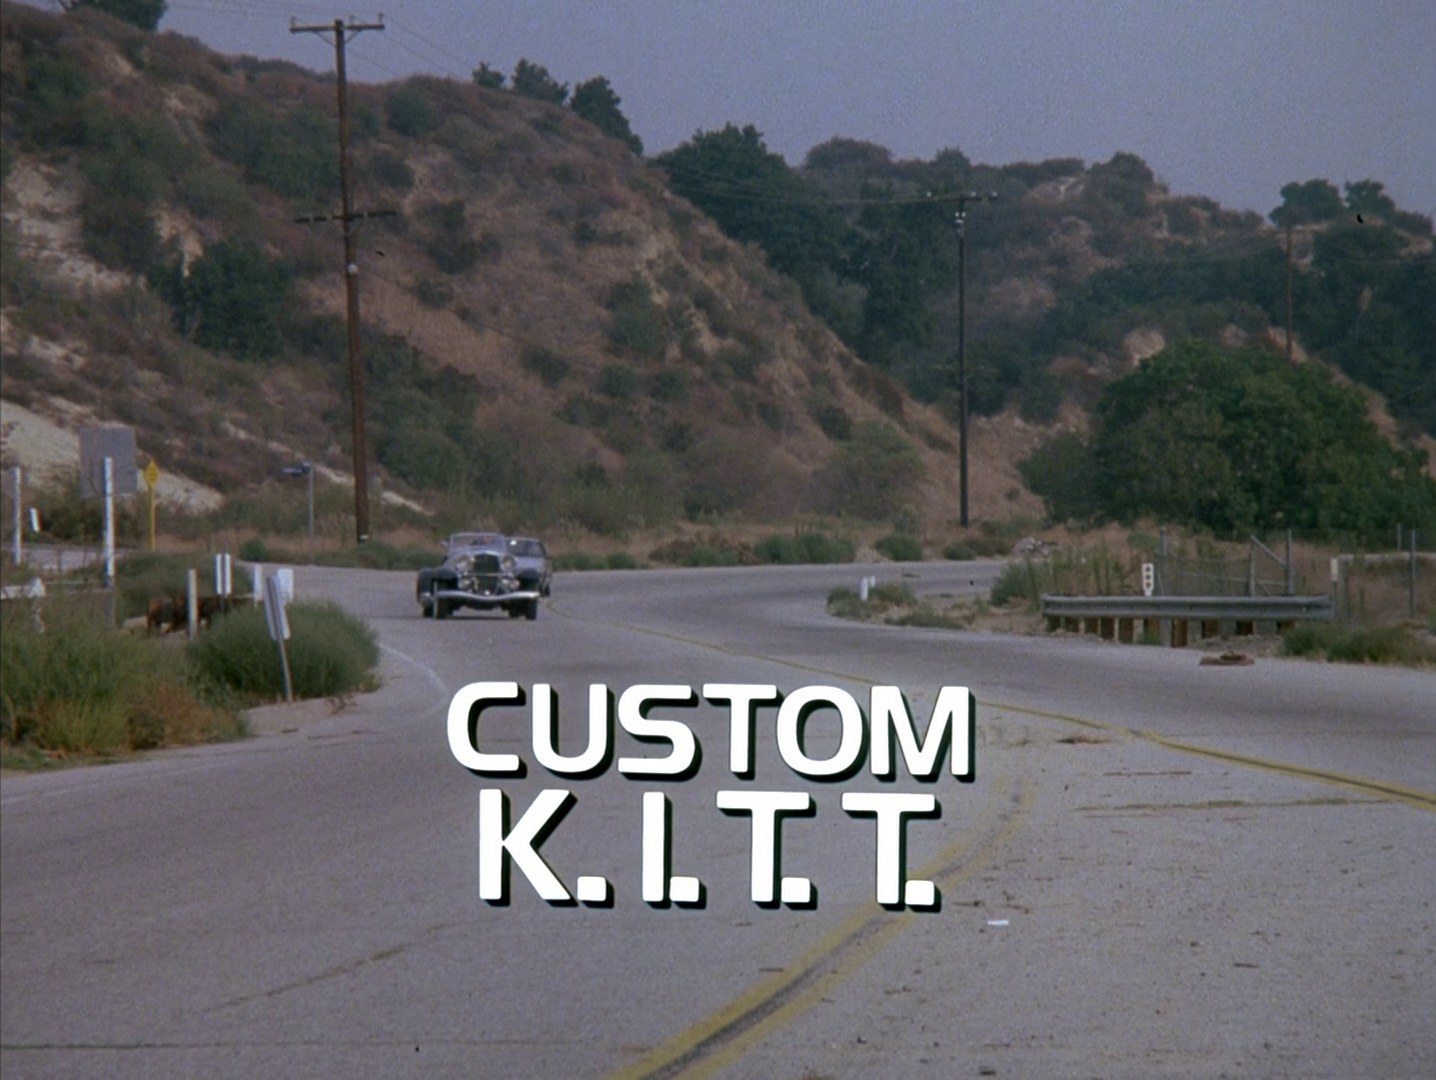 Knight Rider Season 2 - Episode 28 - Custom KITT - Photo 1